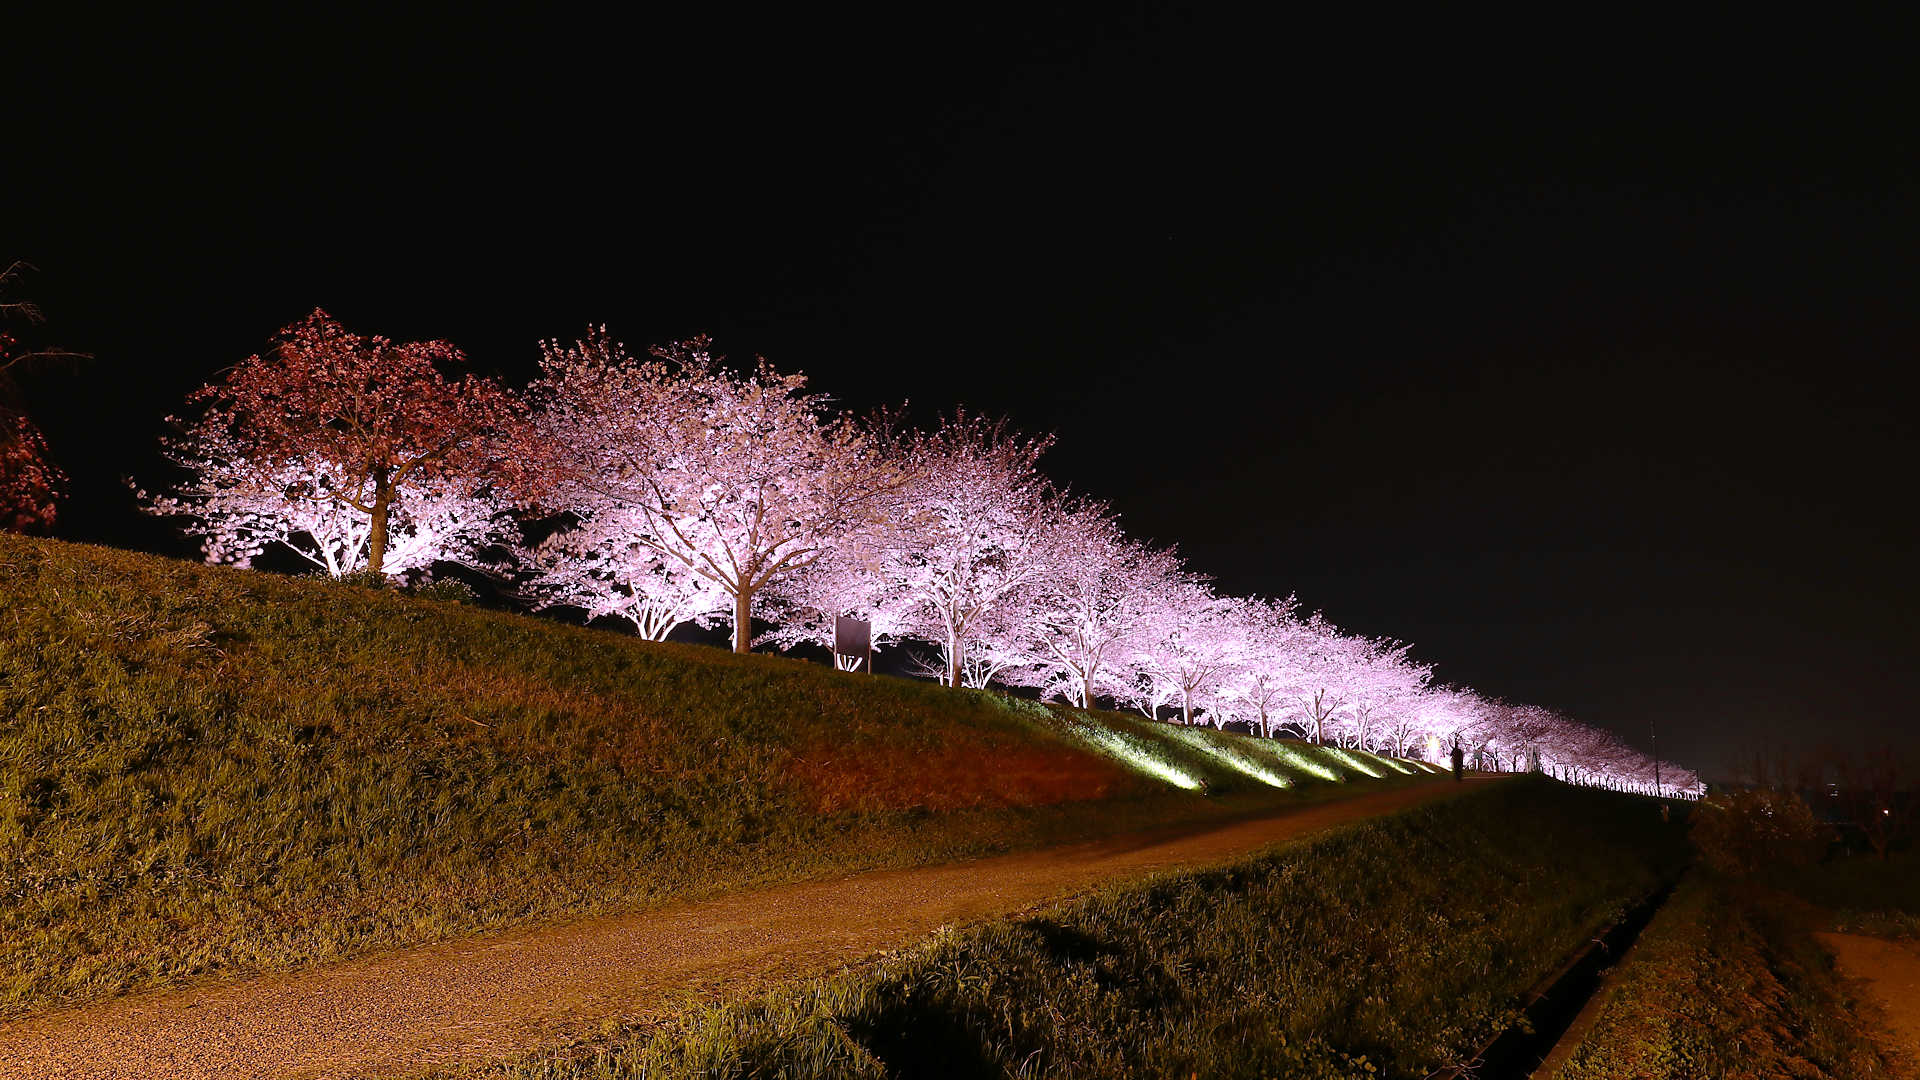 おの桜づつみ回廊18 桜の絶景 西日本最大級の桜並木